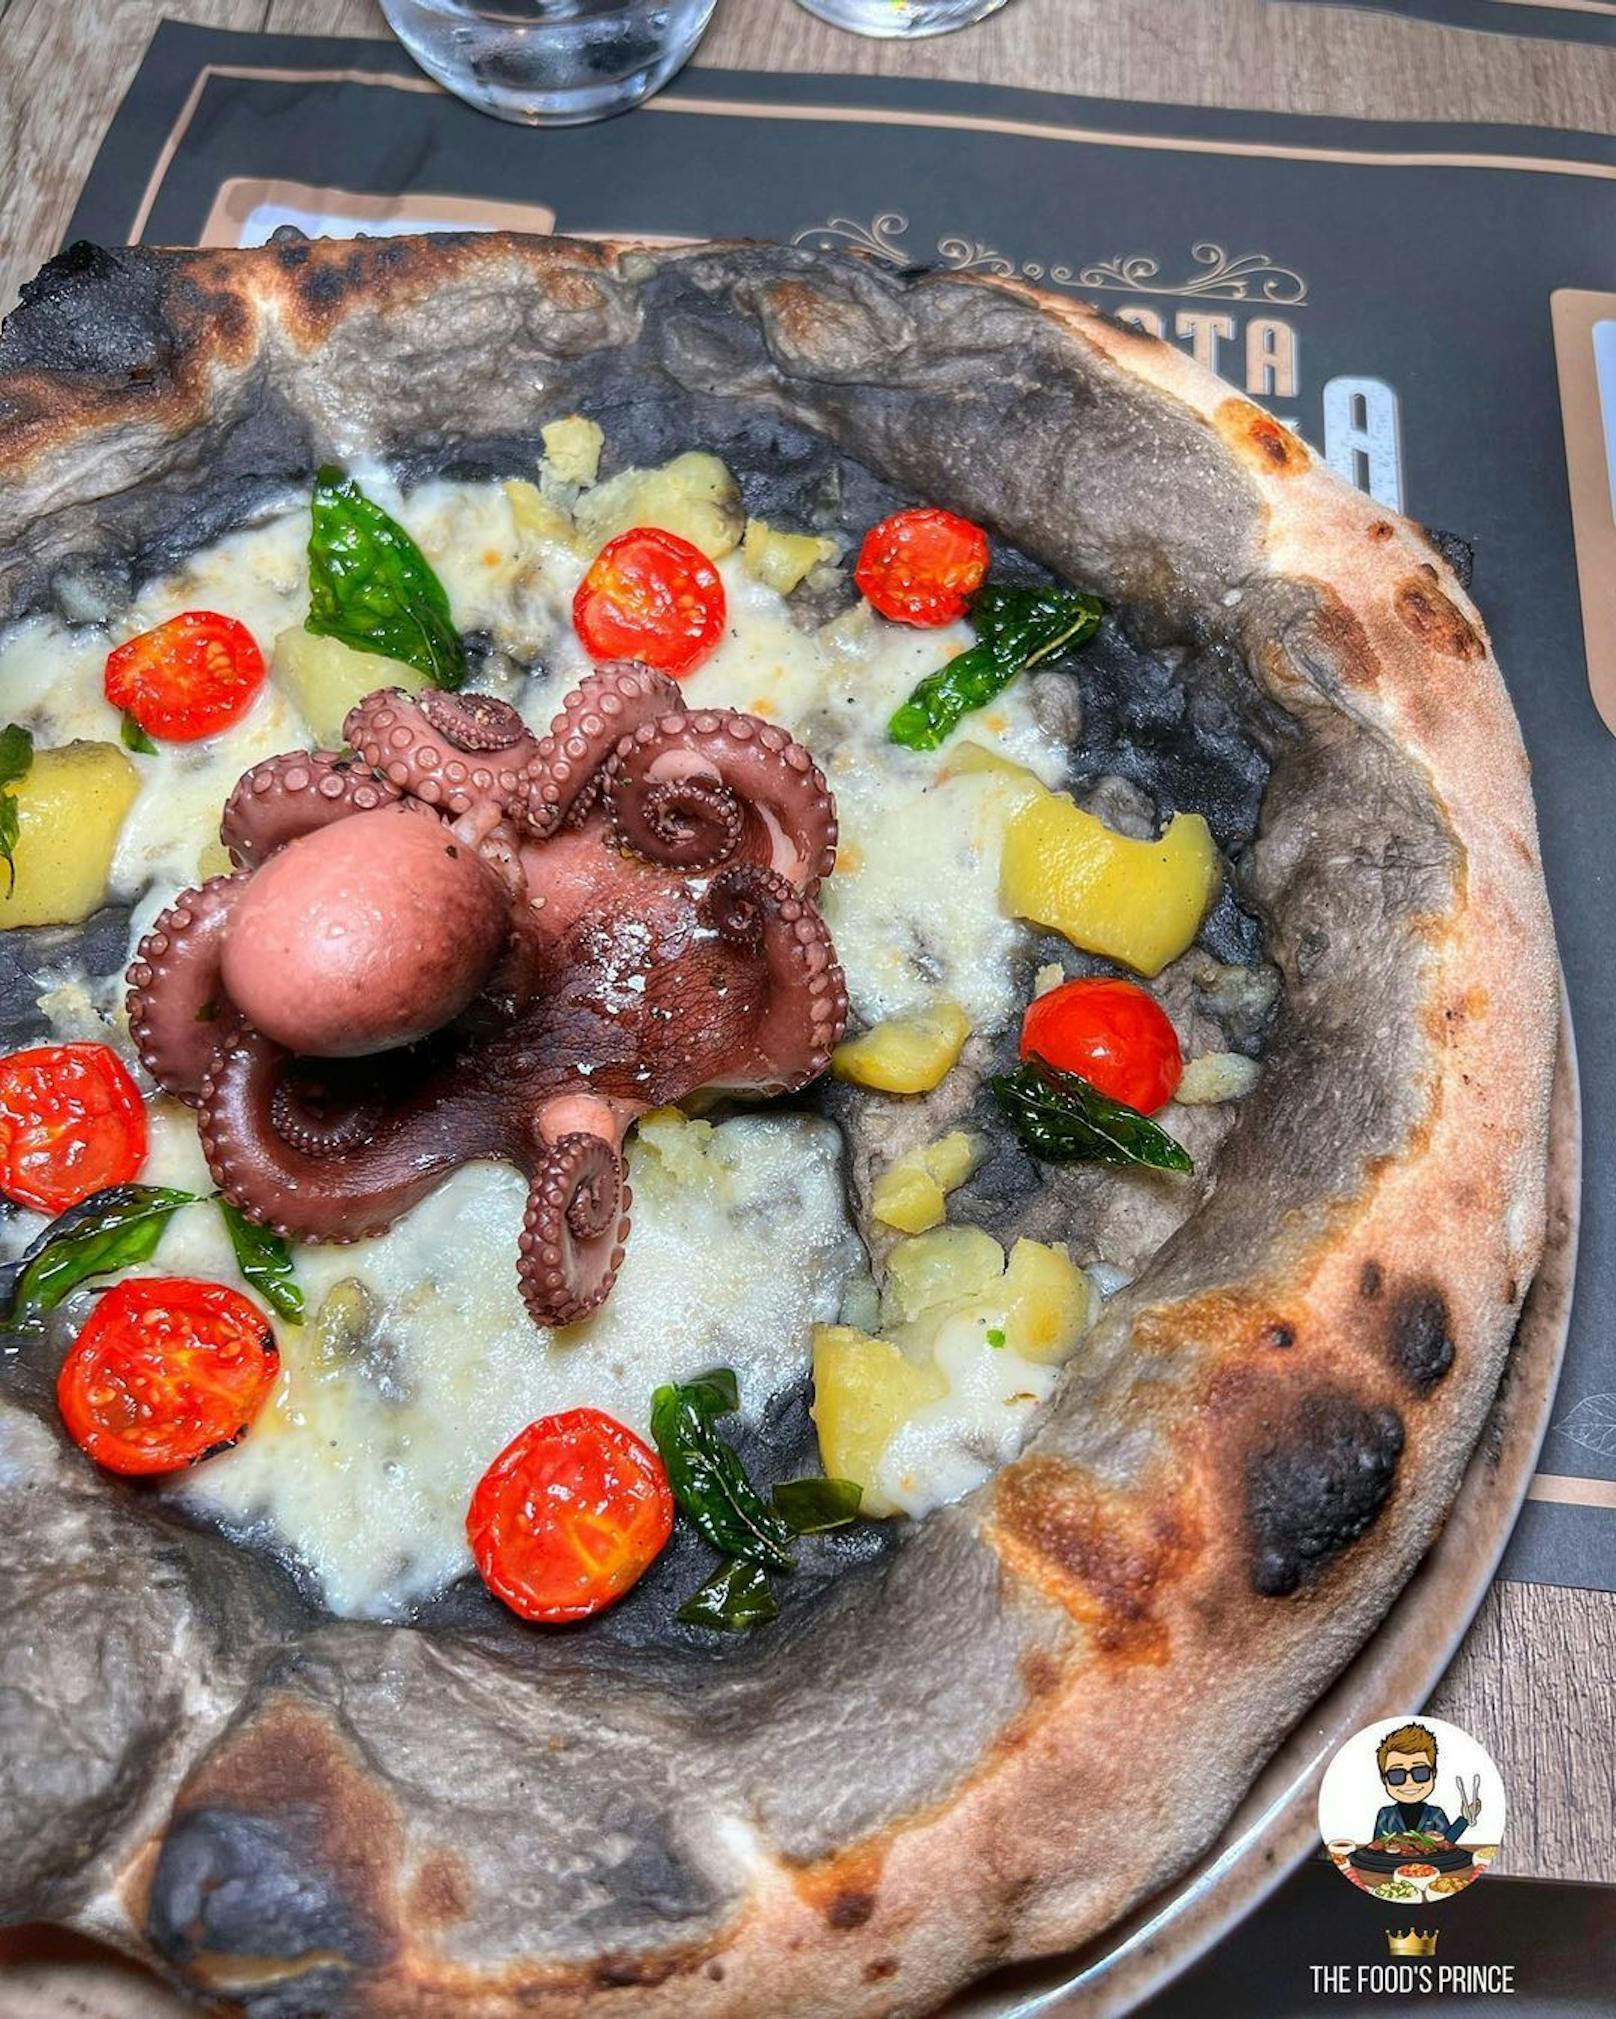 So sieht die Pizza mit flaumigem&nbsp;<a data-li-document-ref="40572596" href="https://www.heute.at/s/neapolitanische-pizza-ist-jetzt-unesco-kulturerbe-40572596">neapolitanische</a>n&nbsp;Teig, schwarzer Tintenfisch-Creme, Petersilienkartoffeln, Cocktailtomaten und kristallisiertem Basilikum vor den Flammen aus.